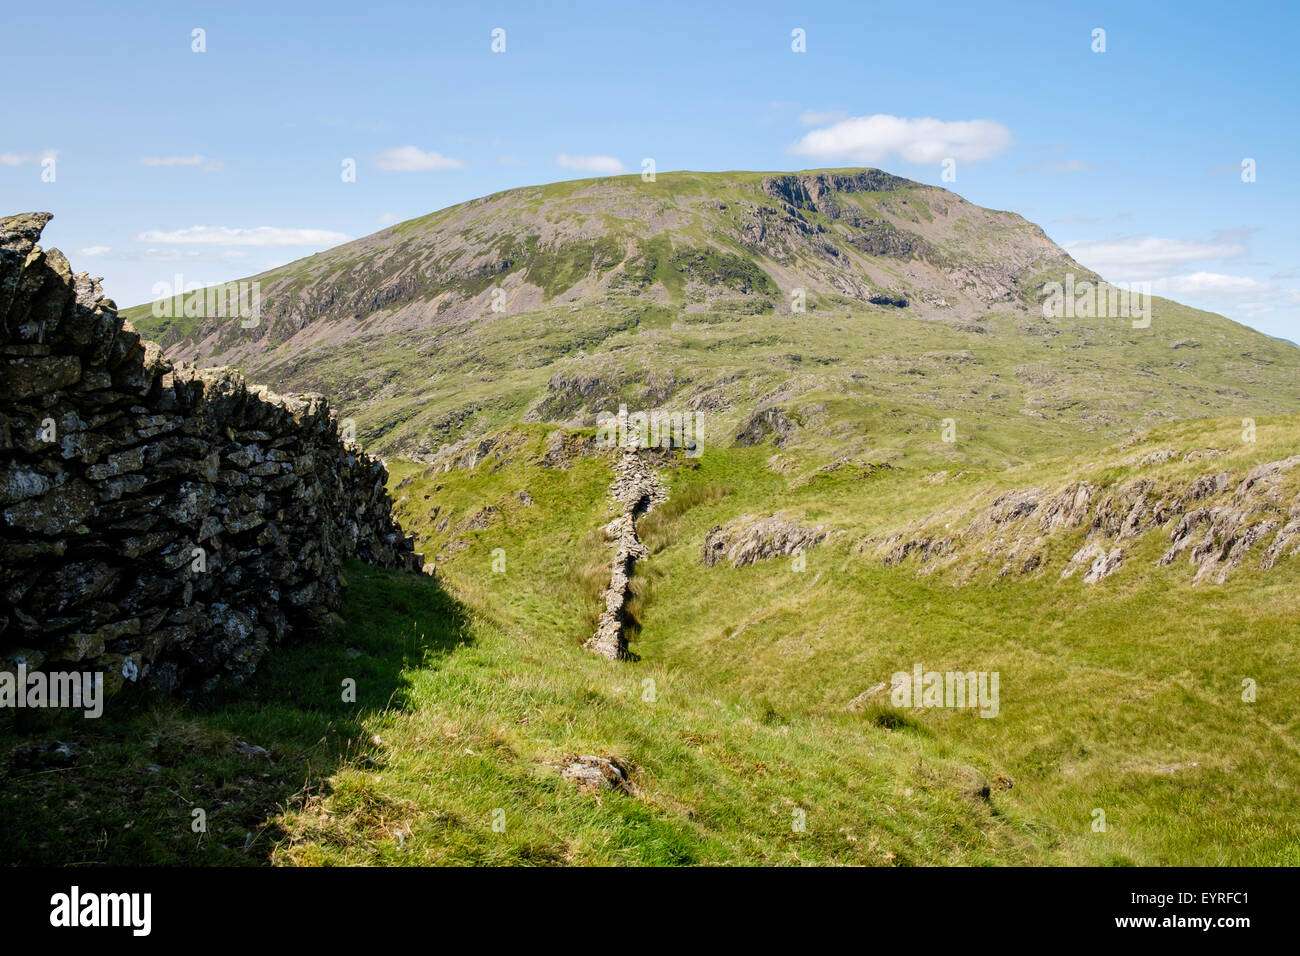 Mur en pierre sèche menant à Moel Hebog Profil de montagne d'est en été. Le Parc National de Snowdonia, le Nord du Pays de Galles, Royaume-Uni, Angleterre Banque D'Images